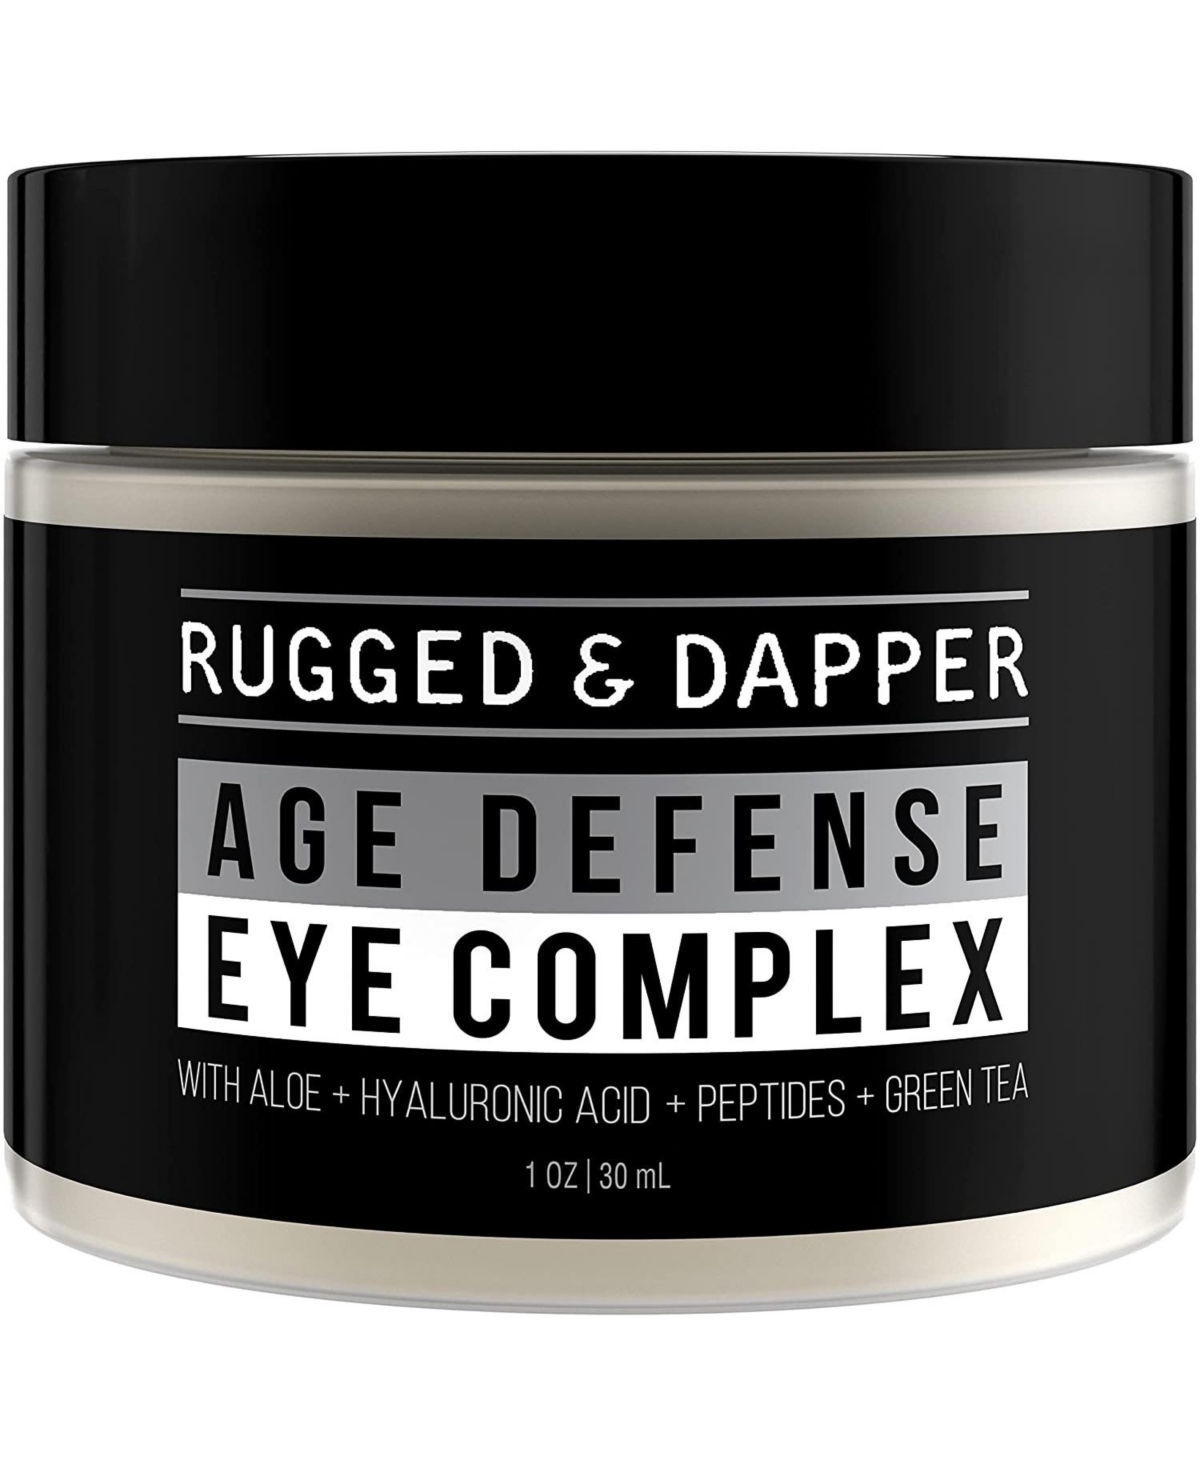 Age Defense Eye Complex, Eye Cream for Men, 1 Ounce